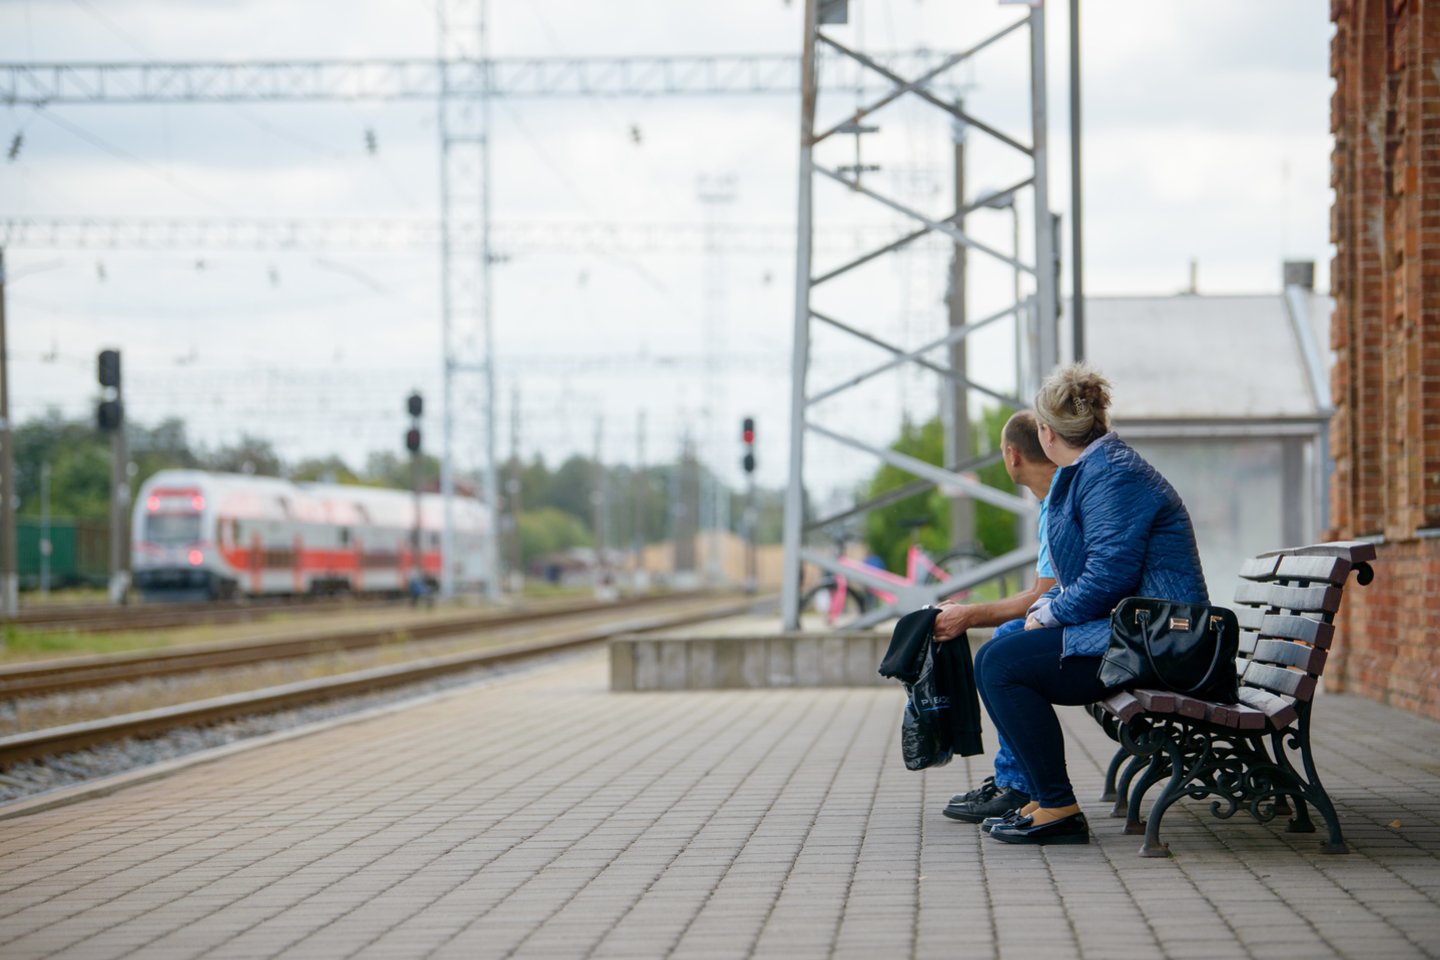 Iš Vilniaus į Kauną vaikinas nutarė keliauti per geležinkelio bėgius.<br>J.Stacevičiaus nuotr.